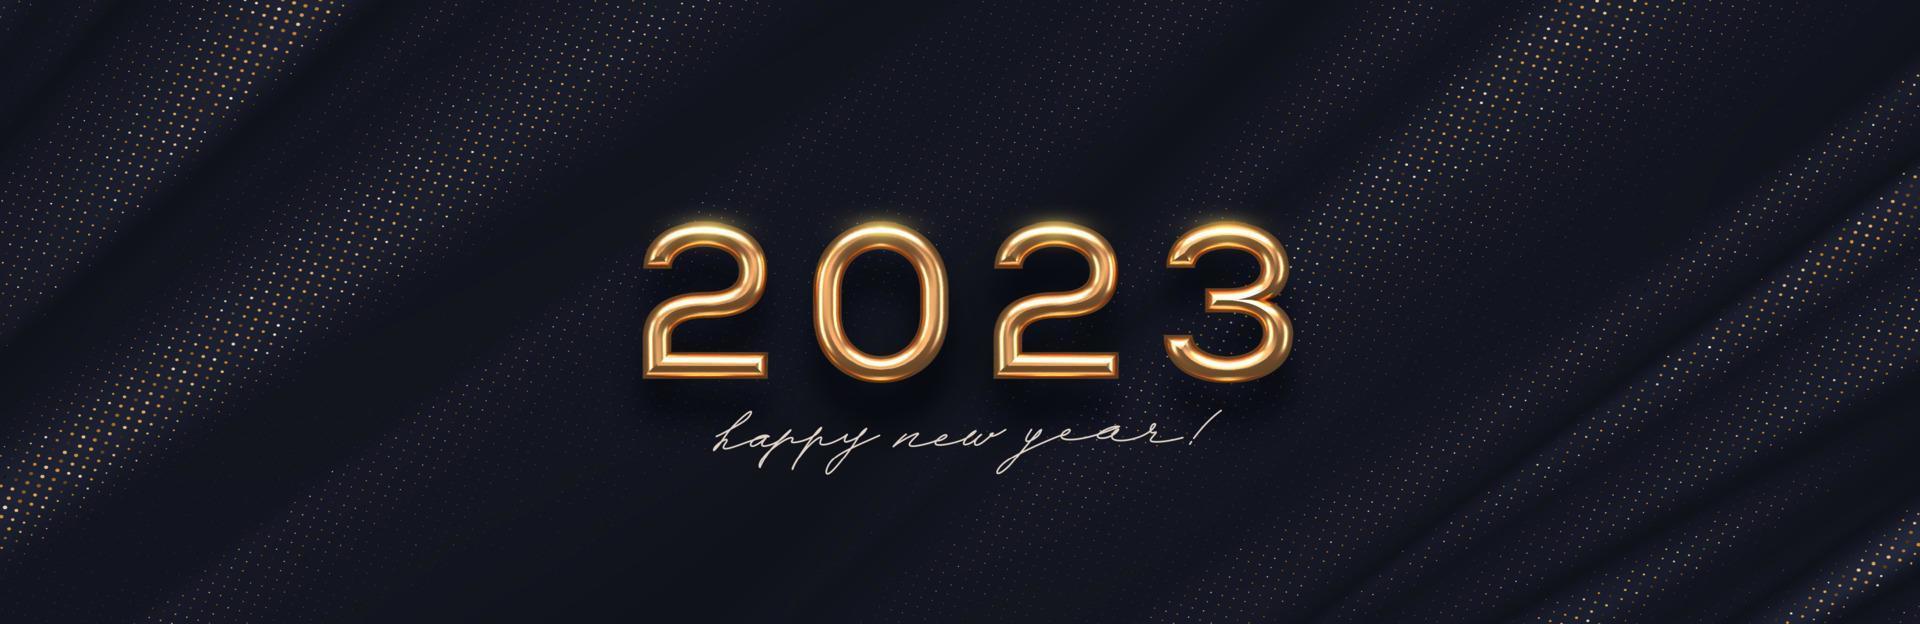 Logotipo dorado de año nuevo 2023 sobre fondo textil negro abstracto. diseño de saludo con un número realista de metal dorado del año. diseño para tarjetas de felicitación, invitación, calendario, etc. vector